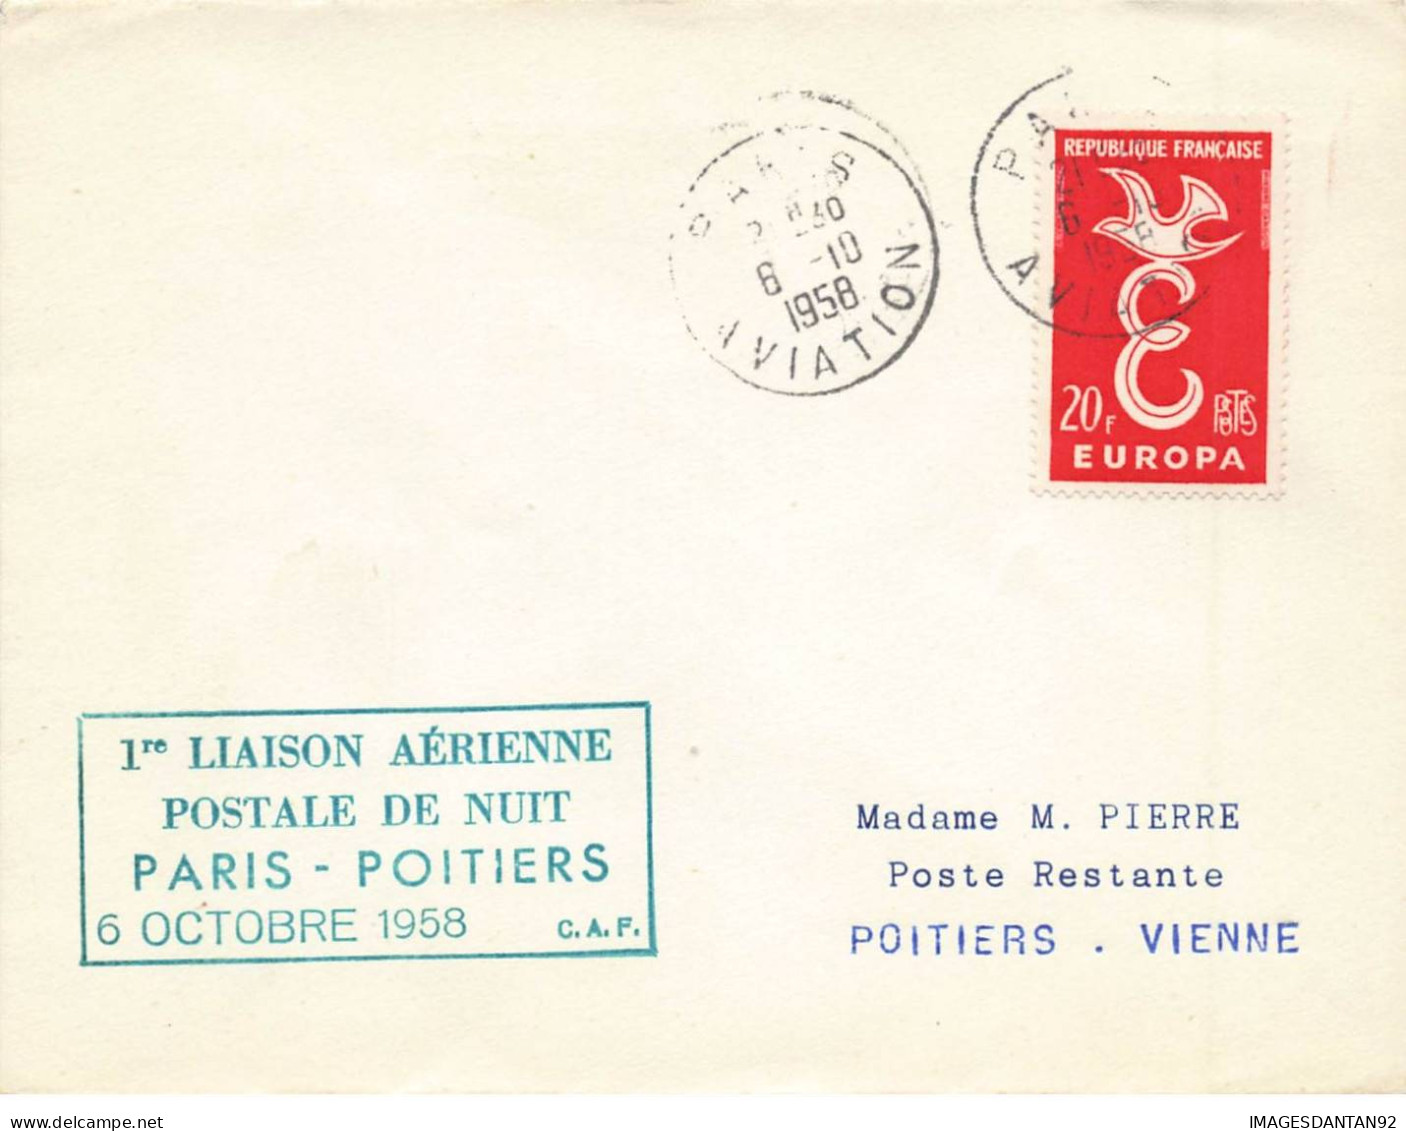 FRANCE #36361 1 ERE LIAISON AERIENNE DE NUIT PARIS POITIERS 1958 - Briefe U. Dokumente